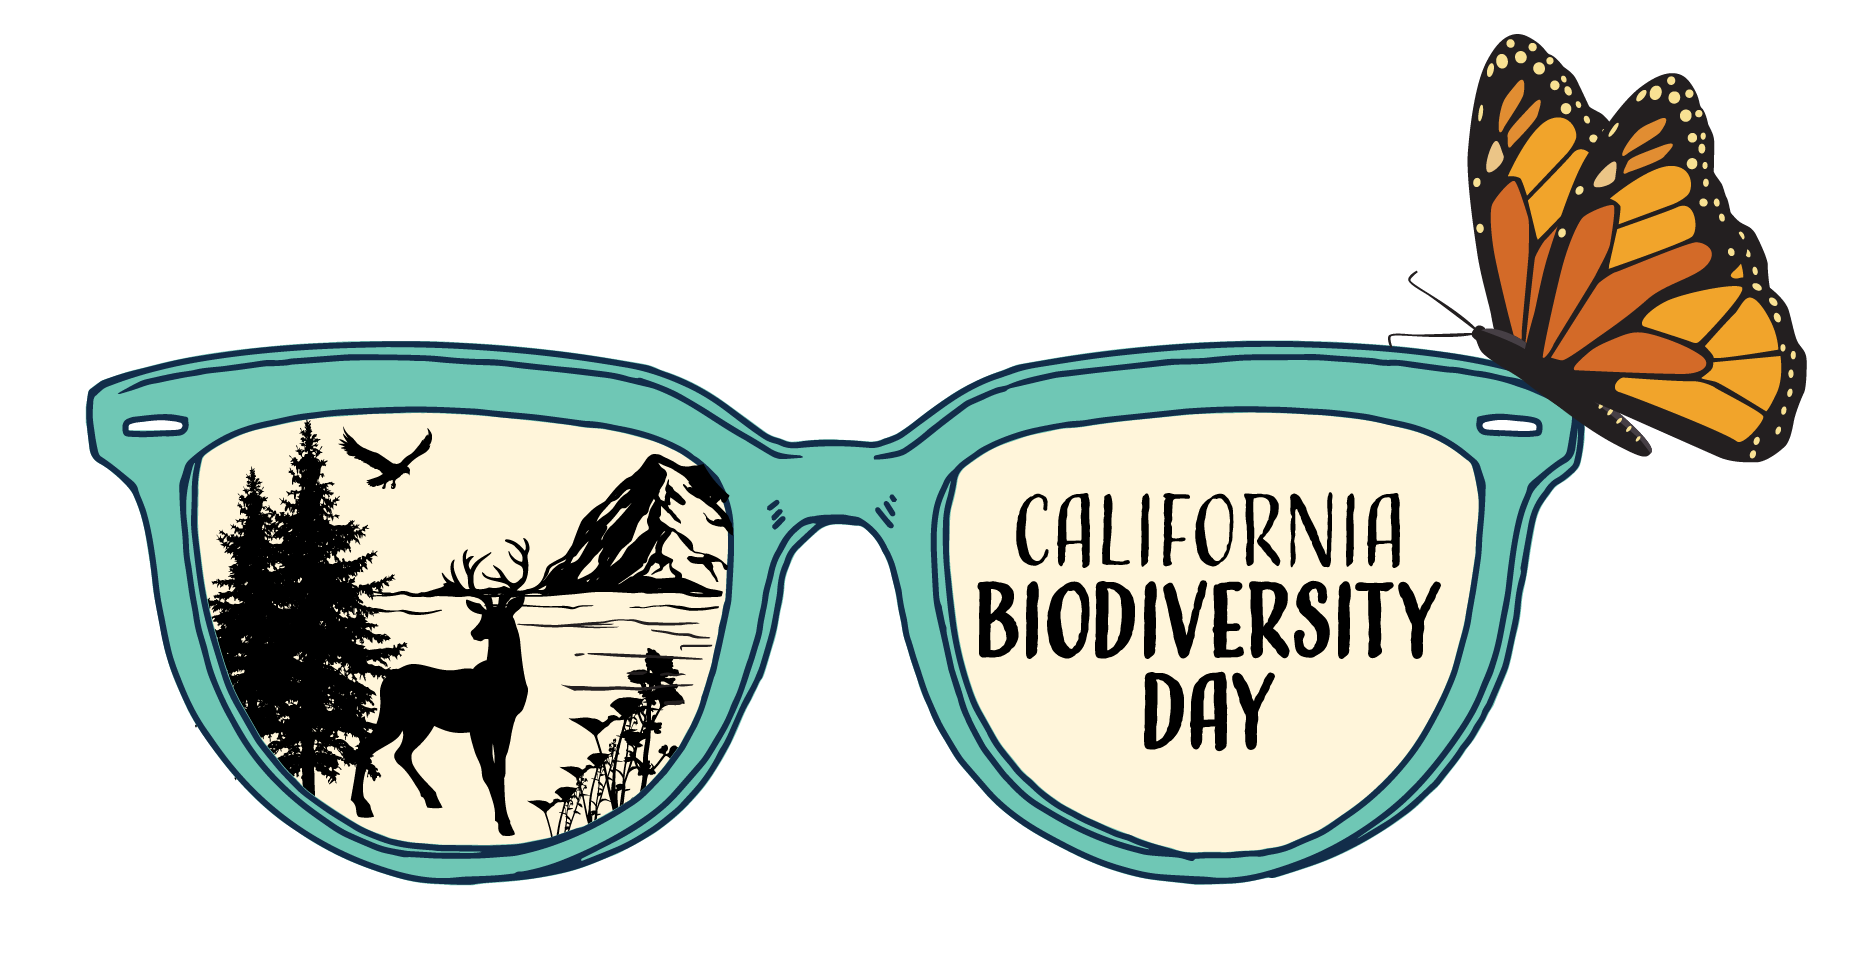 Biodiversity-Day-2021-Logo